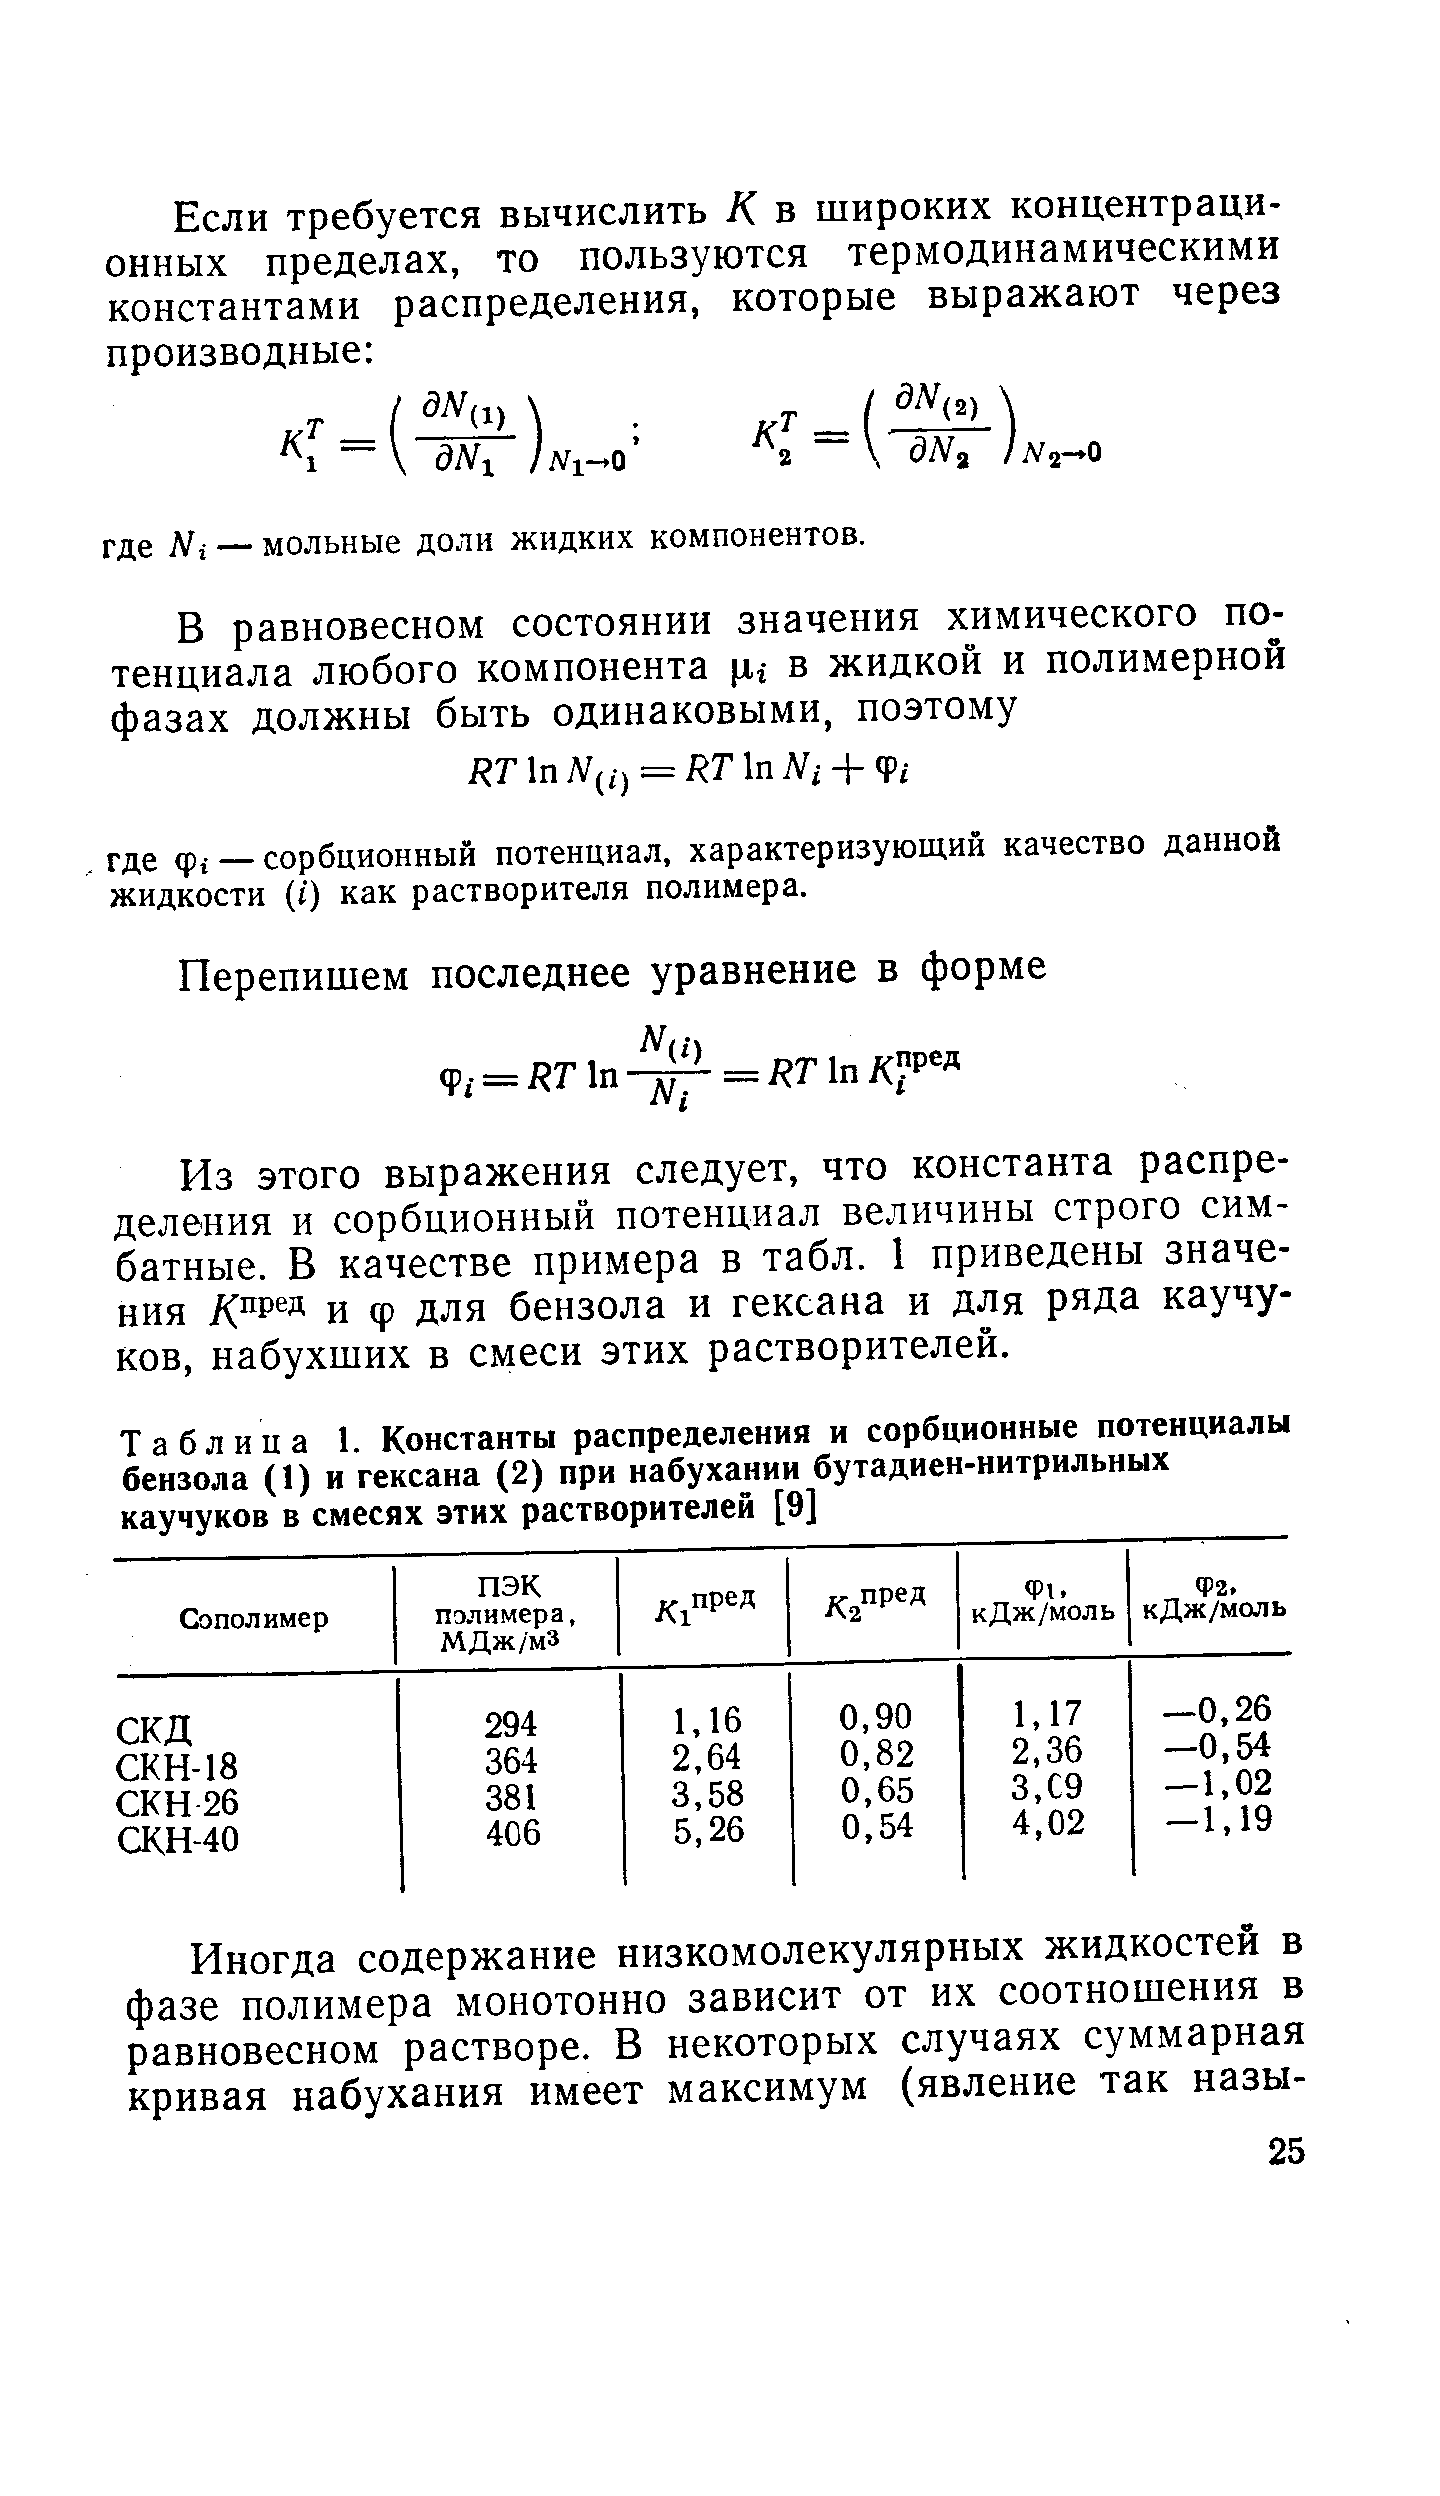 Таблица 1. Константы распределения и сорбционные потенциалы бензола (1) и гексана (2) при набухании <a href="/info/184141">бутадиен-нитрильных каучуков</a> в смесях этих растворителей [9]
